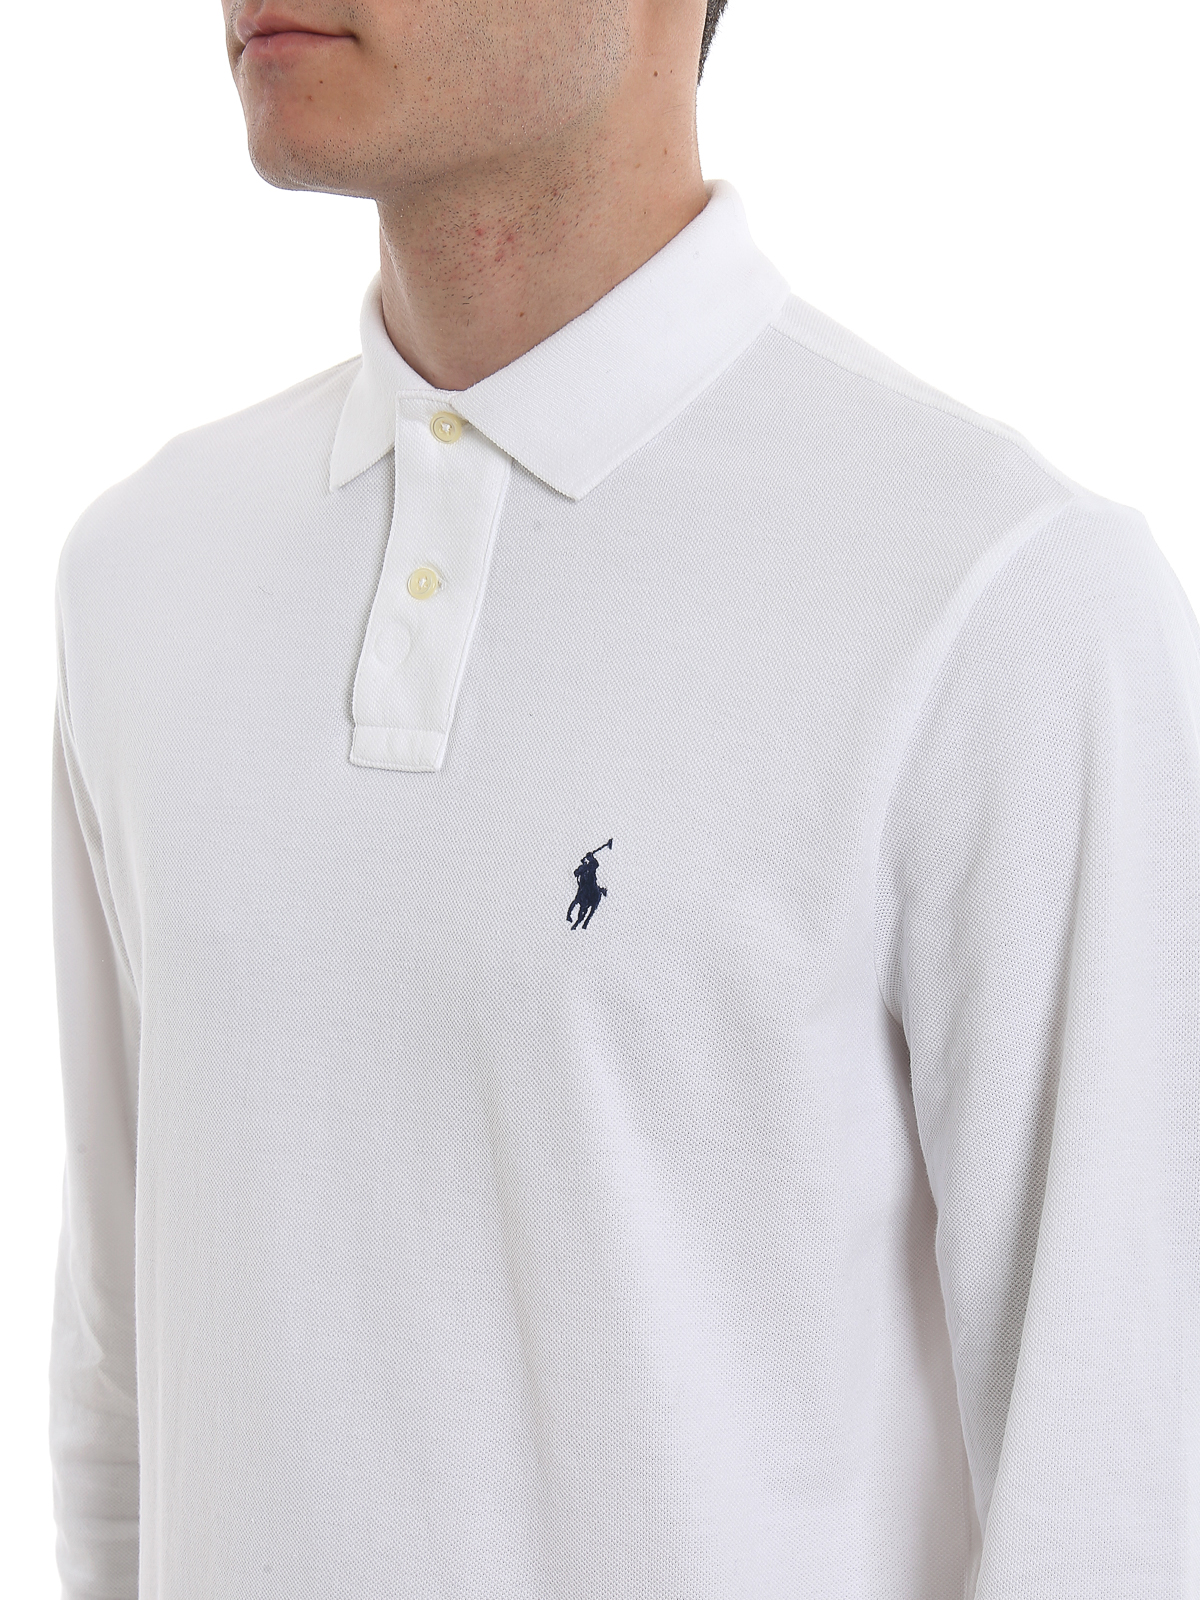 Polo shirts Polo Ralph Lauren - White long sleeve cotton polo - 710680790001